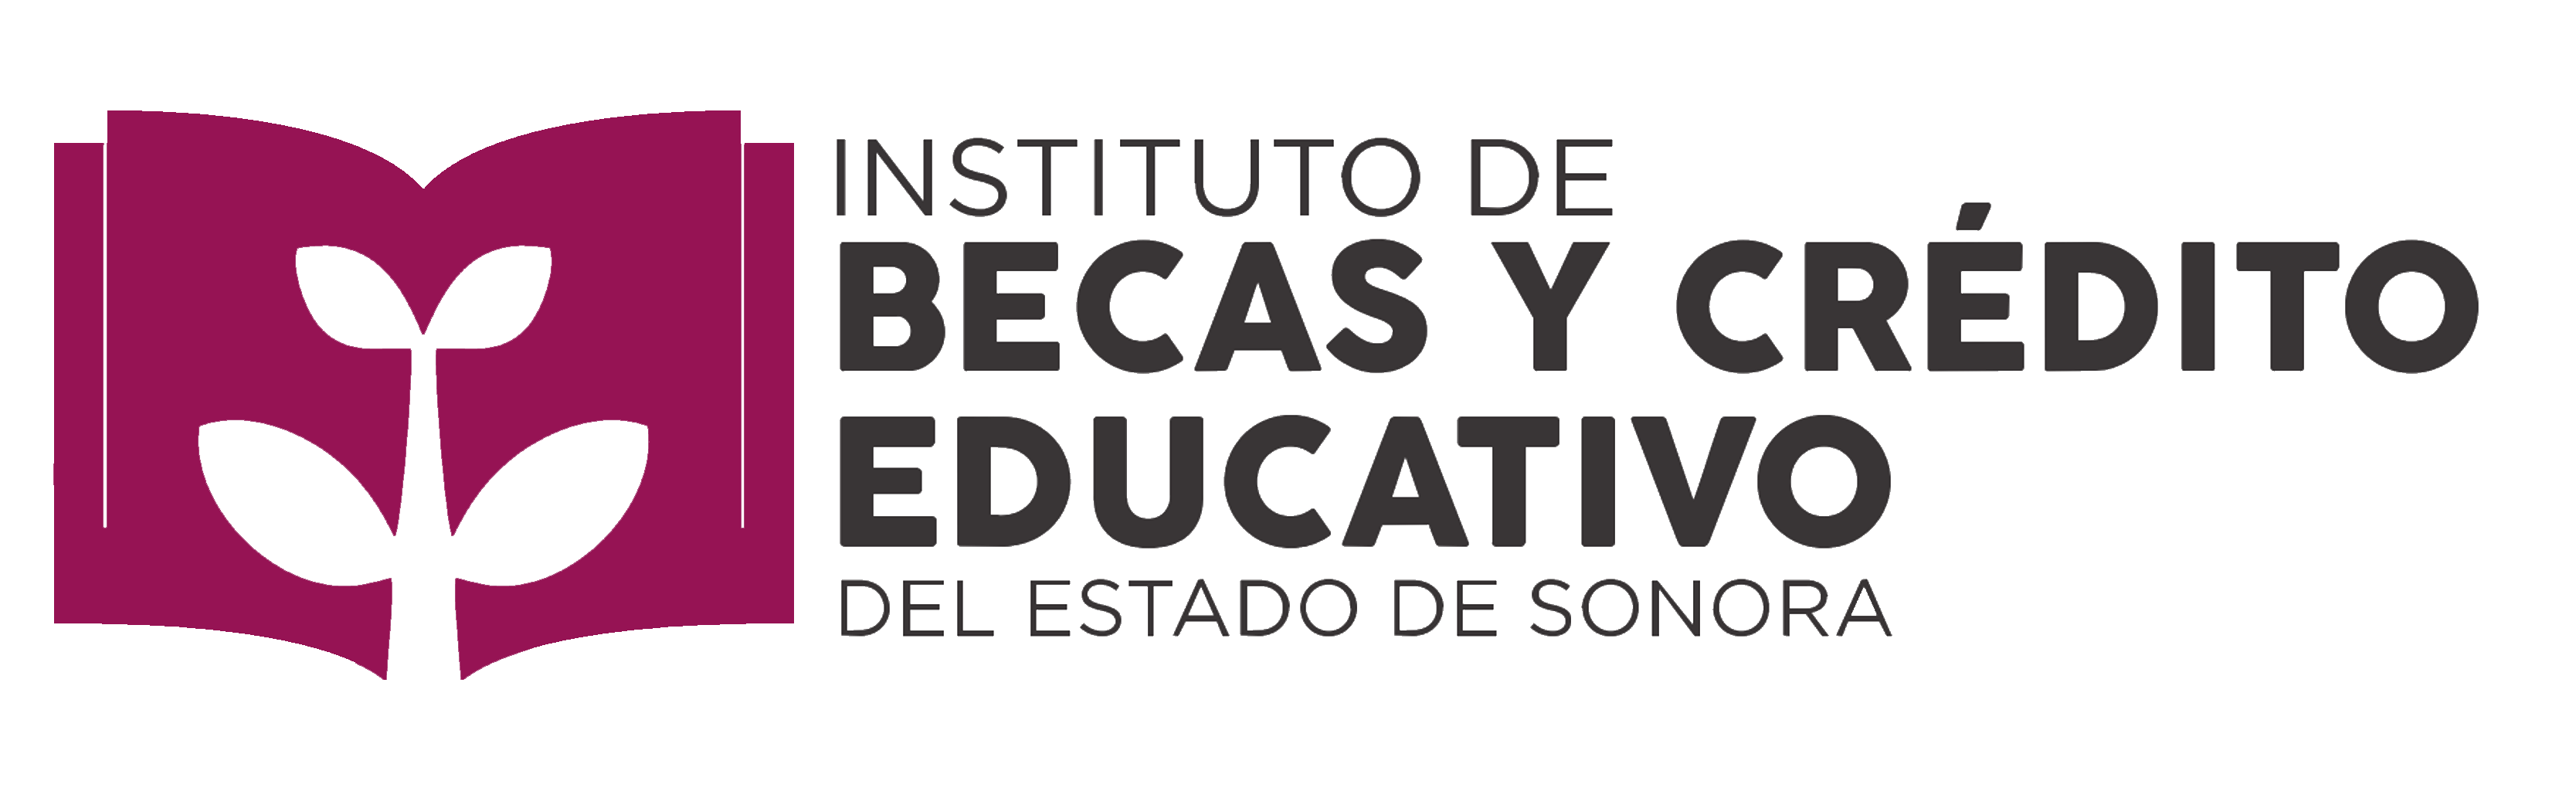 Instituto de Becas y Crédito Educativo del Estado de Sonora